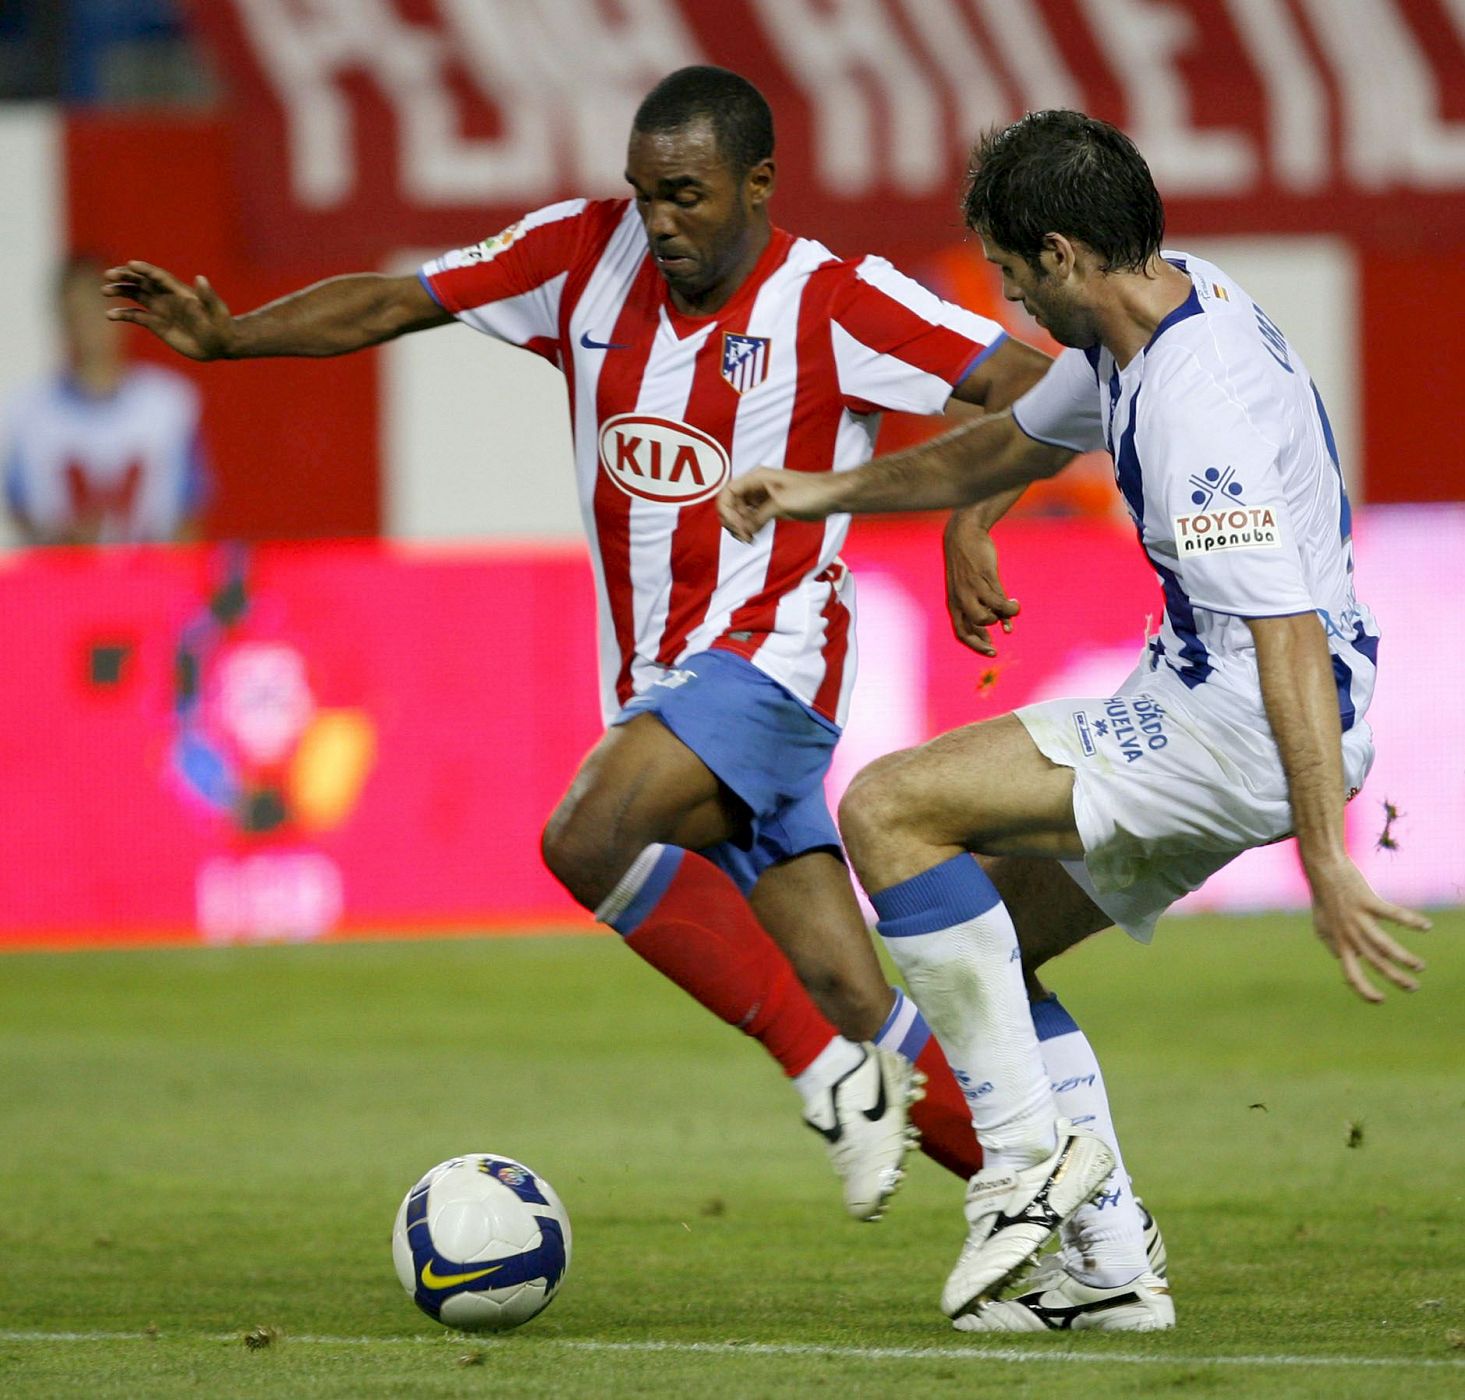 Sinama Pongolle pugna en un puesto en la delantera con Agüero y Forlán.